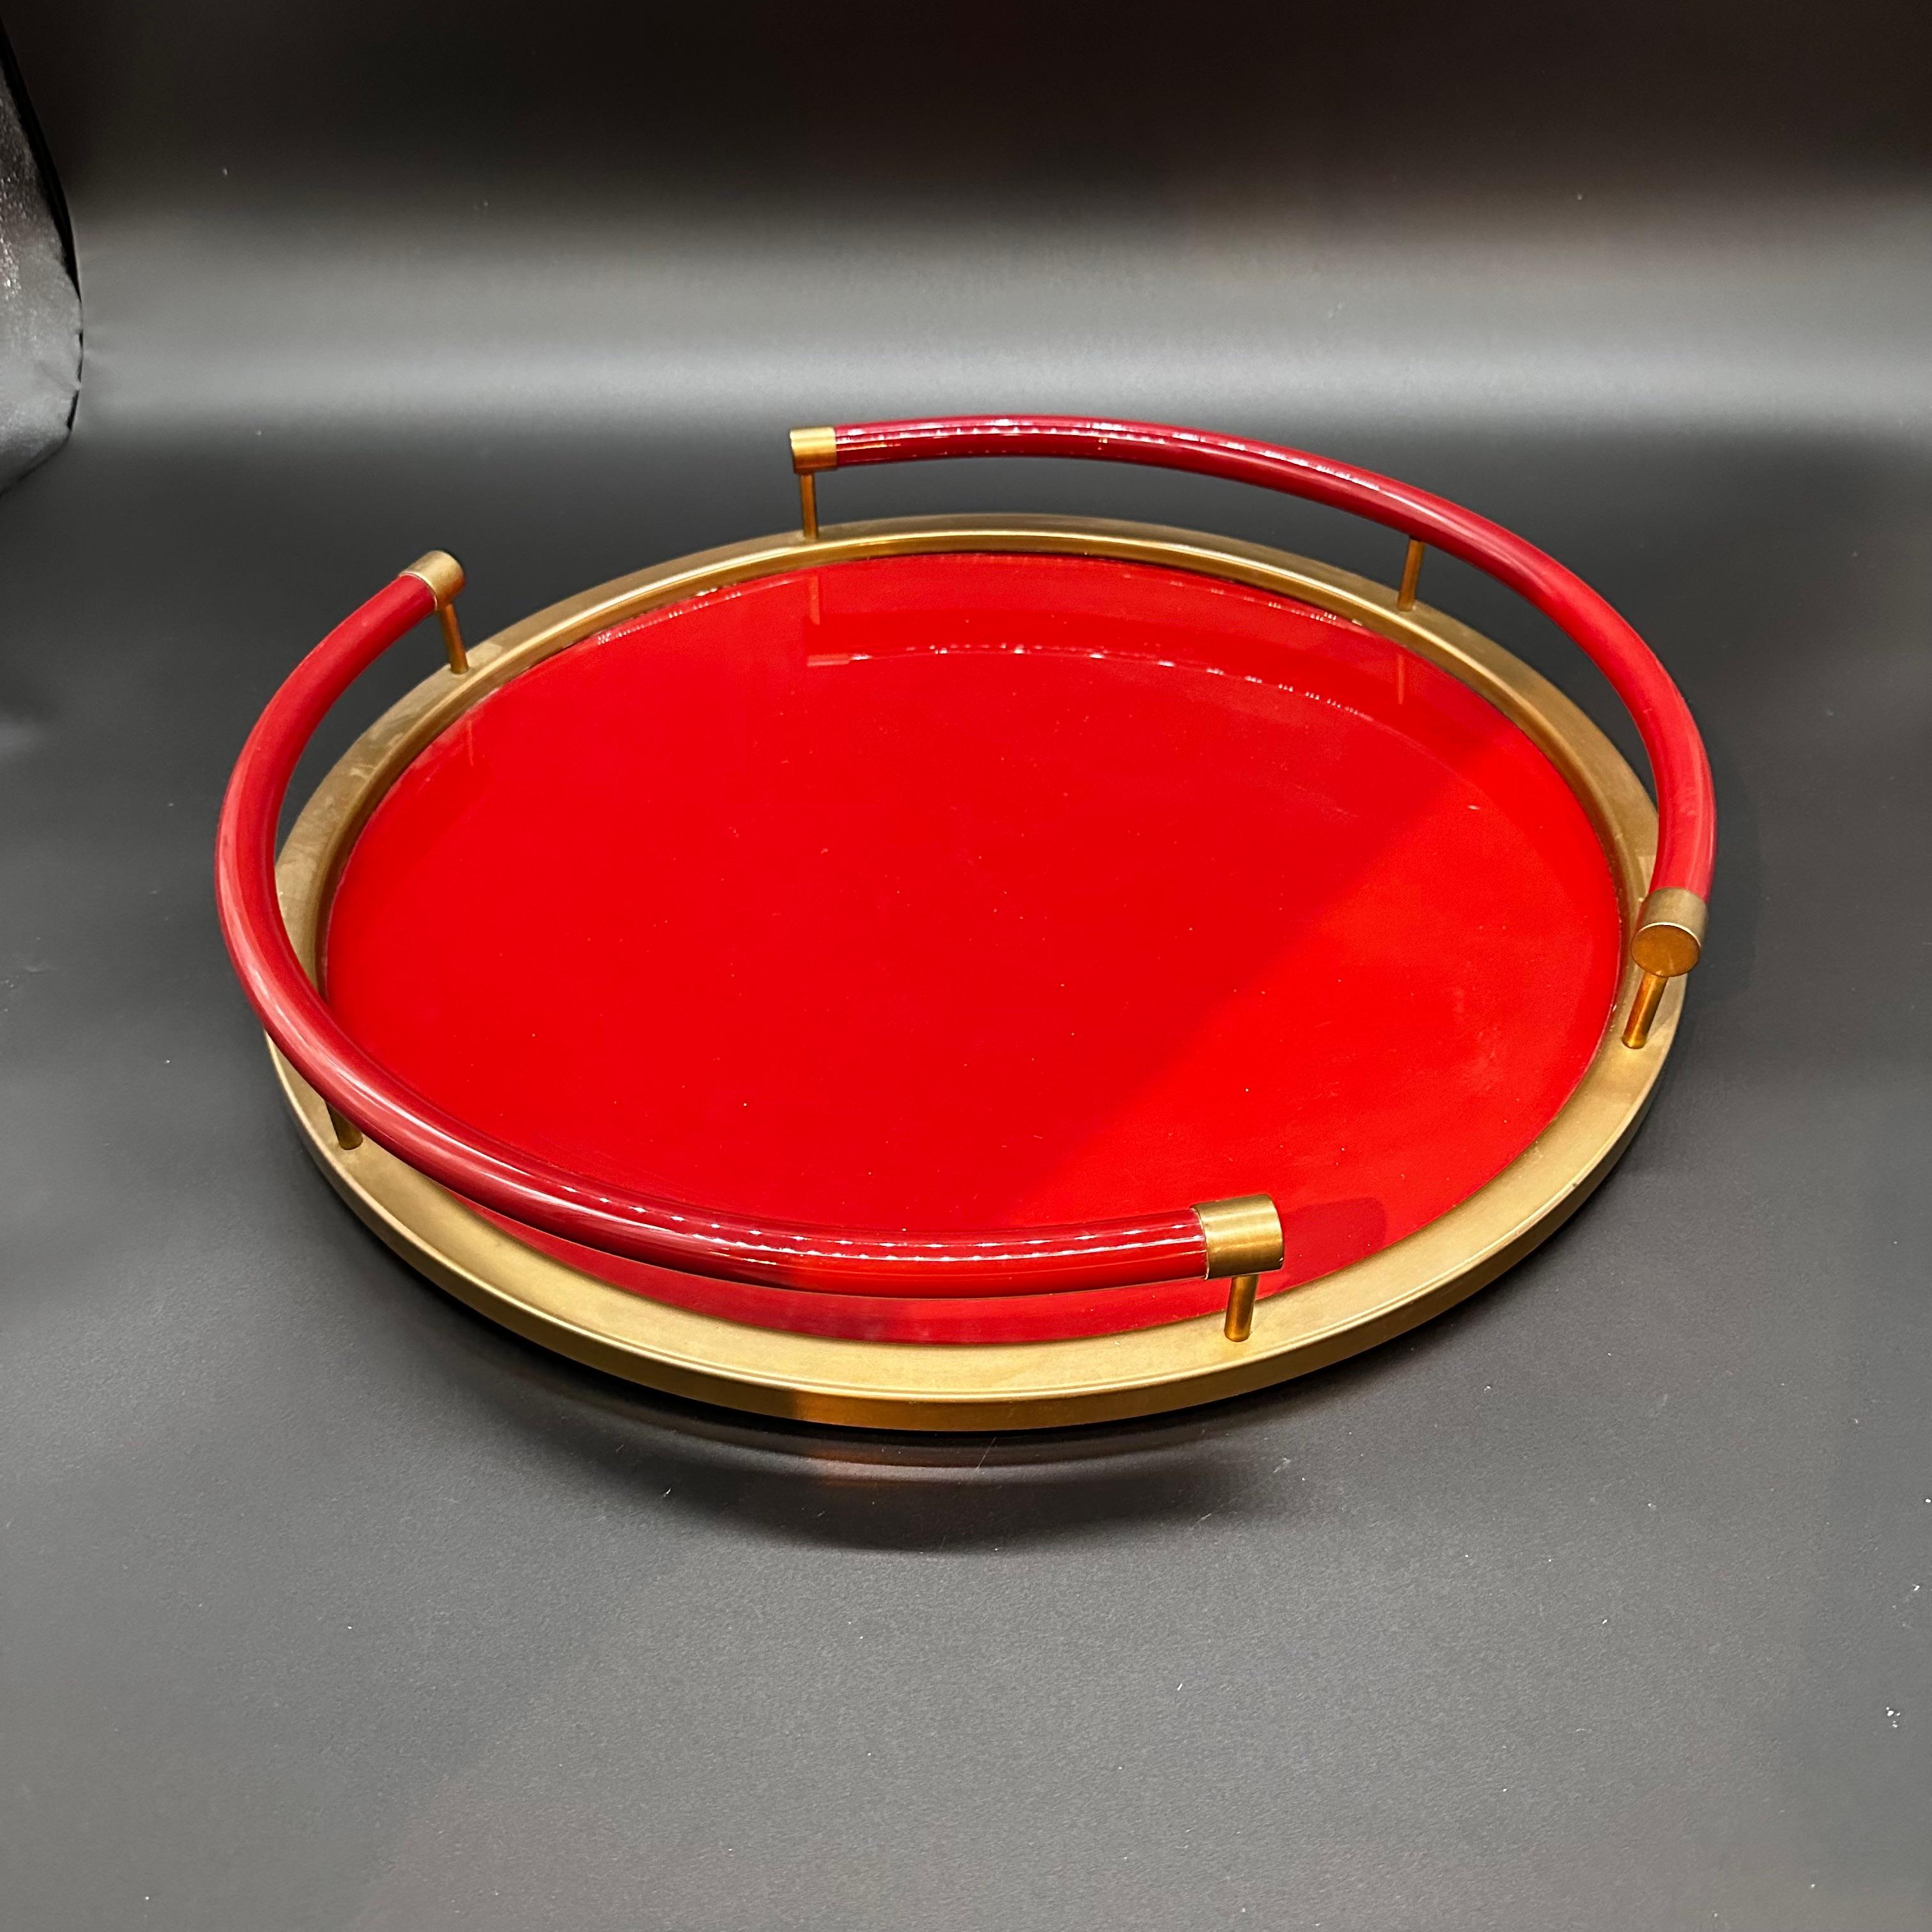 Schönes und einzigartiges italienisches rotes rundes Tablett mit Messingdetails.

